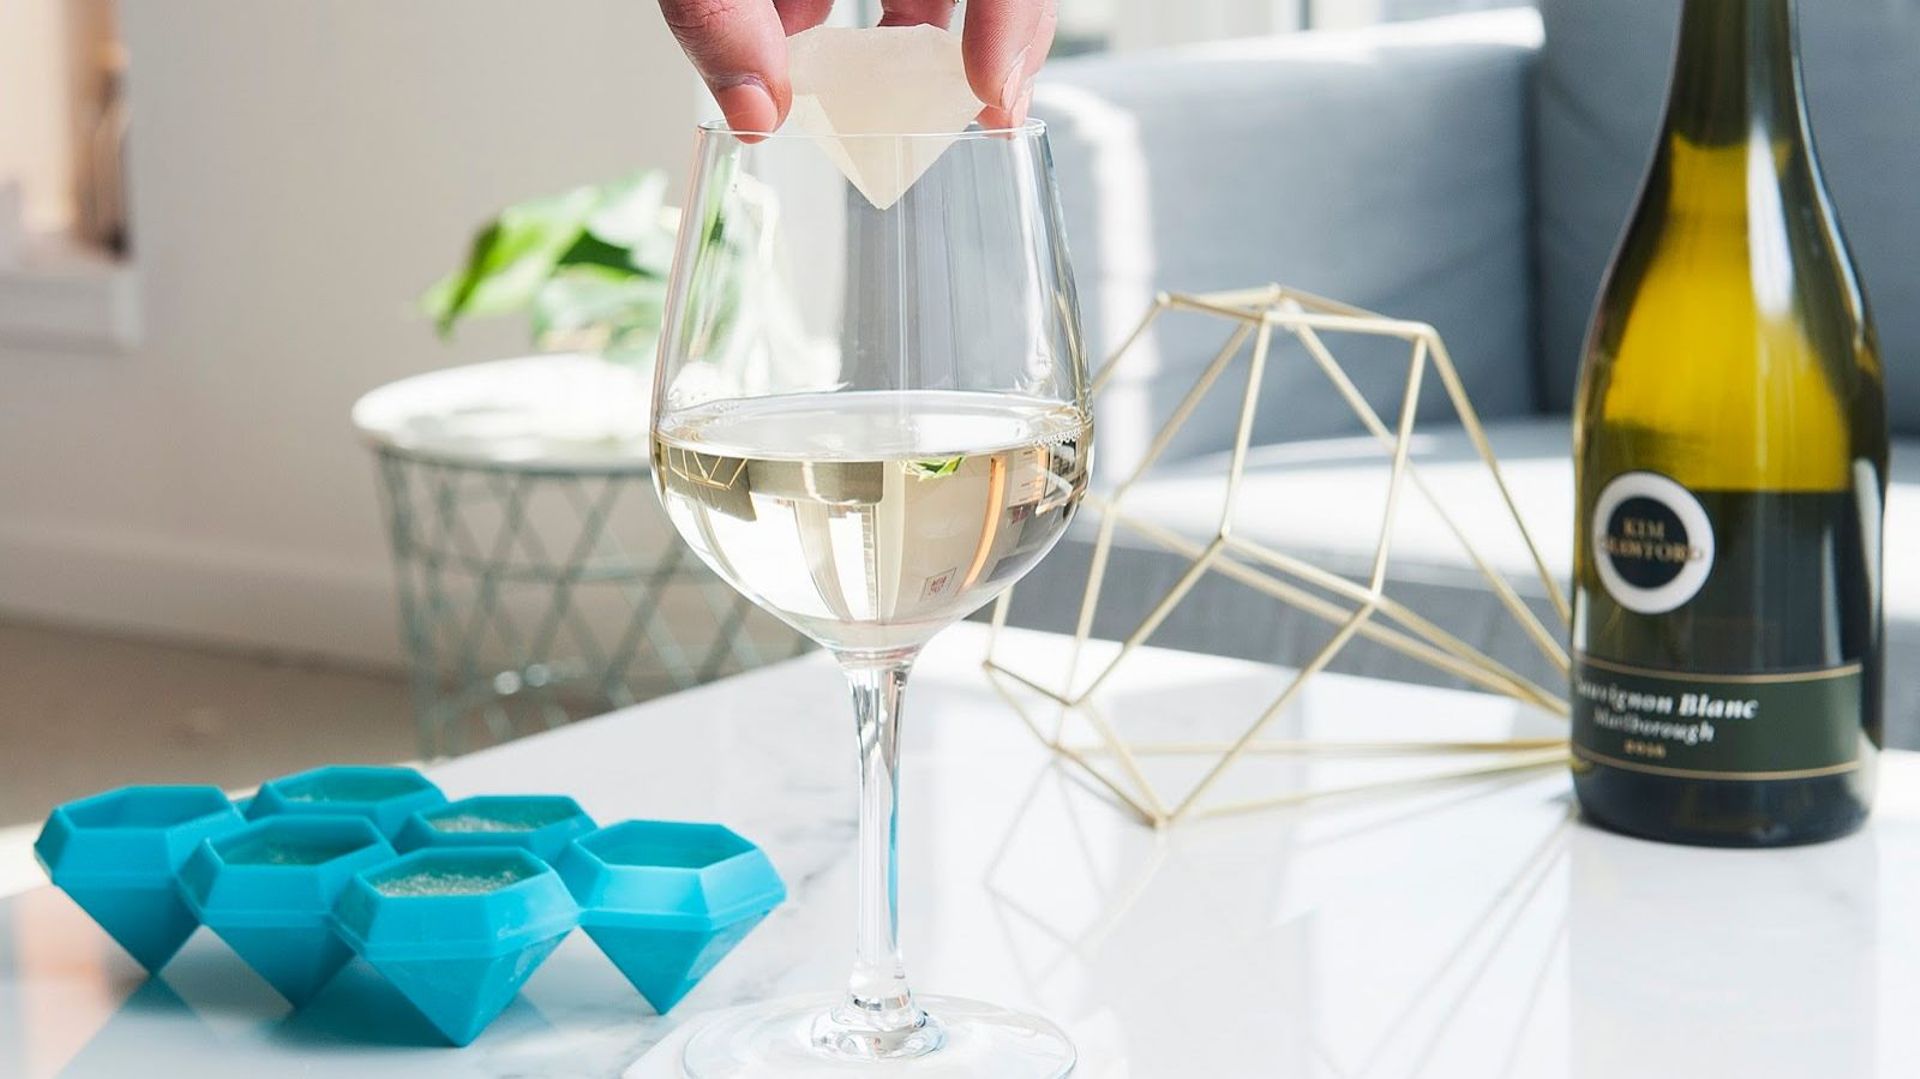 Votre verre de vin, avec ou sans glaçon?